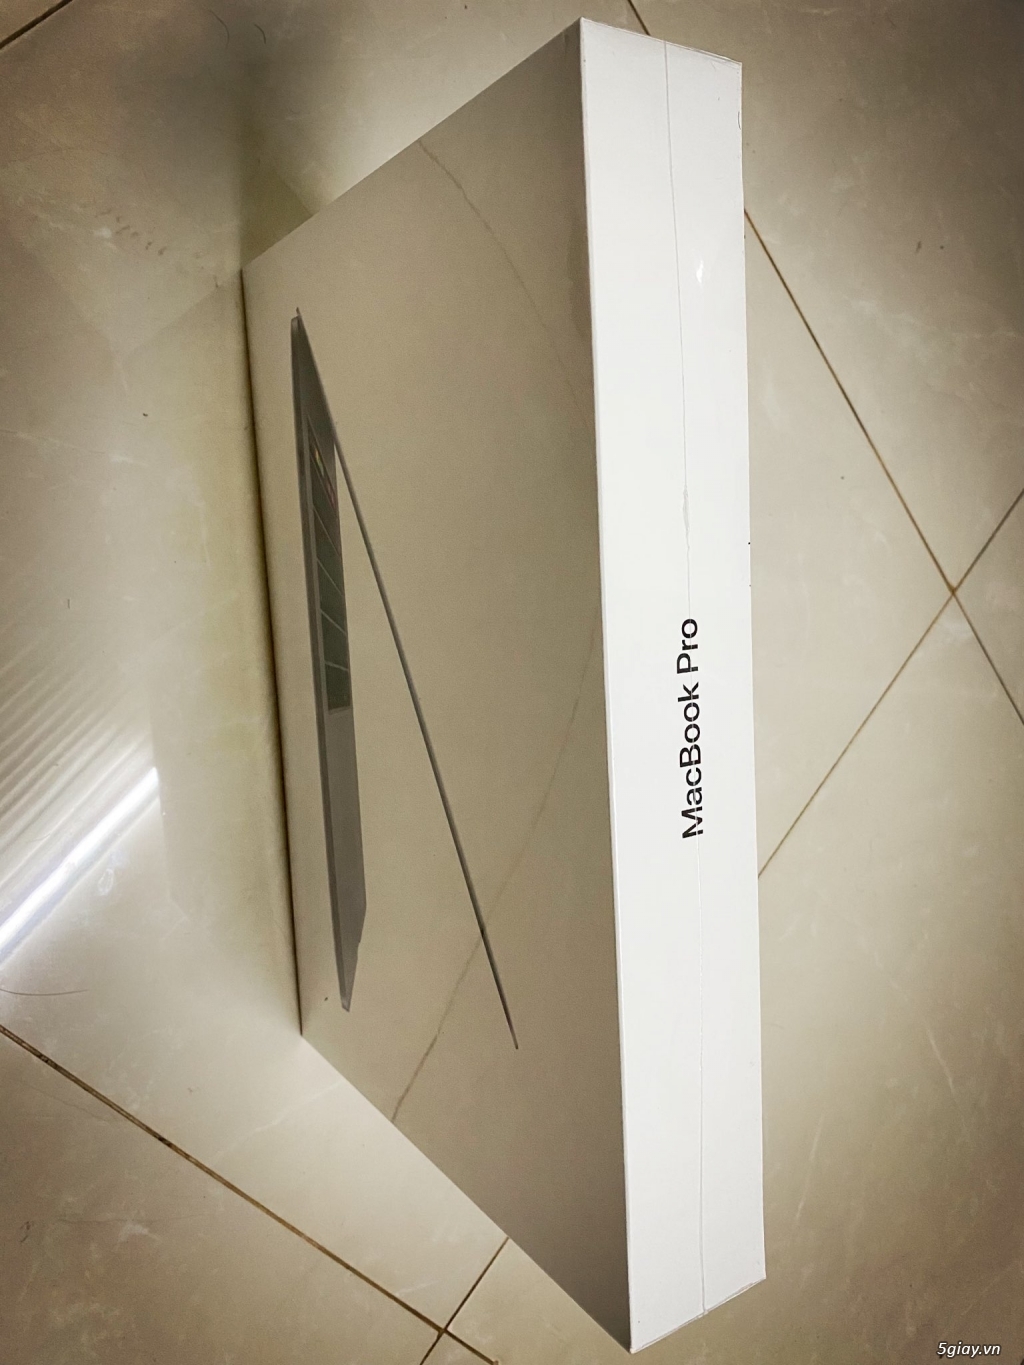 MacBook Pro 15 Touch Bar i9 2.3GHz/16G/512GB, hàng xách tay Amazon USA - 3